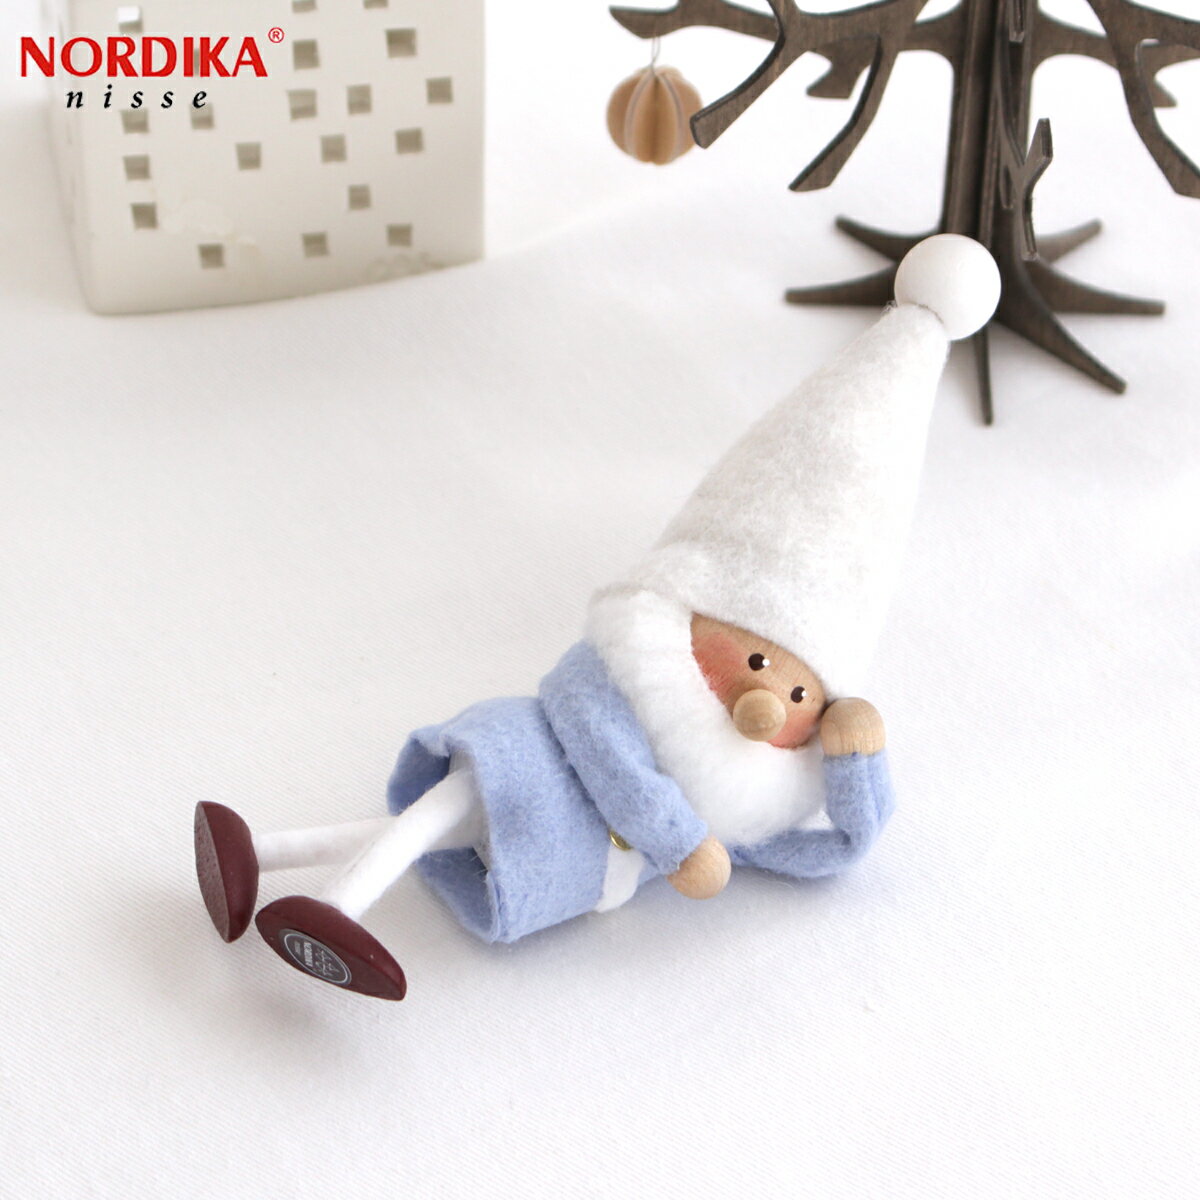 ノルディカニッセ ひとやすみサンタ 星に願いを シリーズ NORDIKA nisse クリスマス 雑貨 木製 人形 北欧 NRD120676